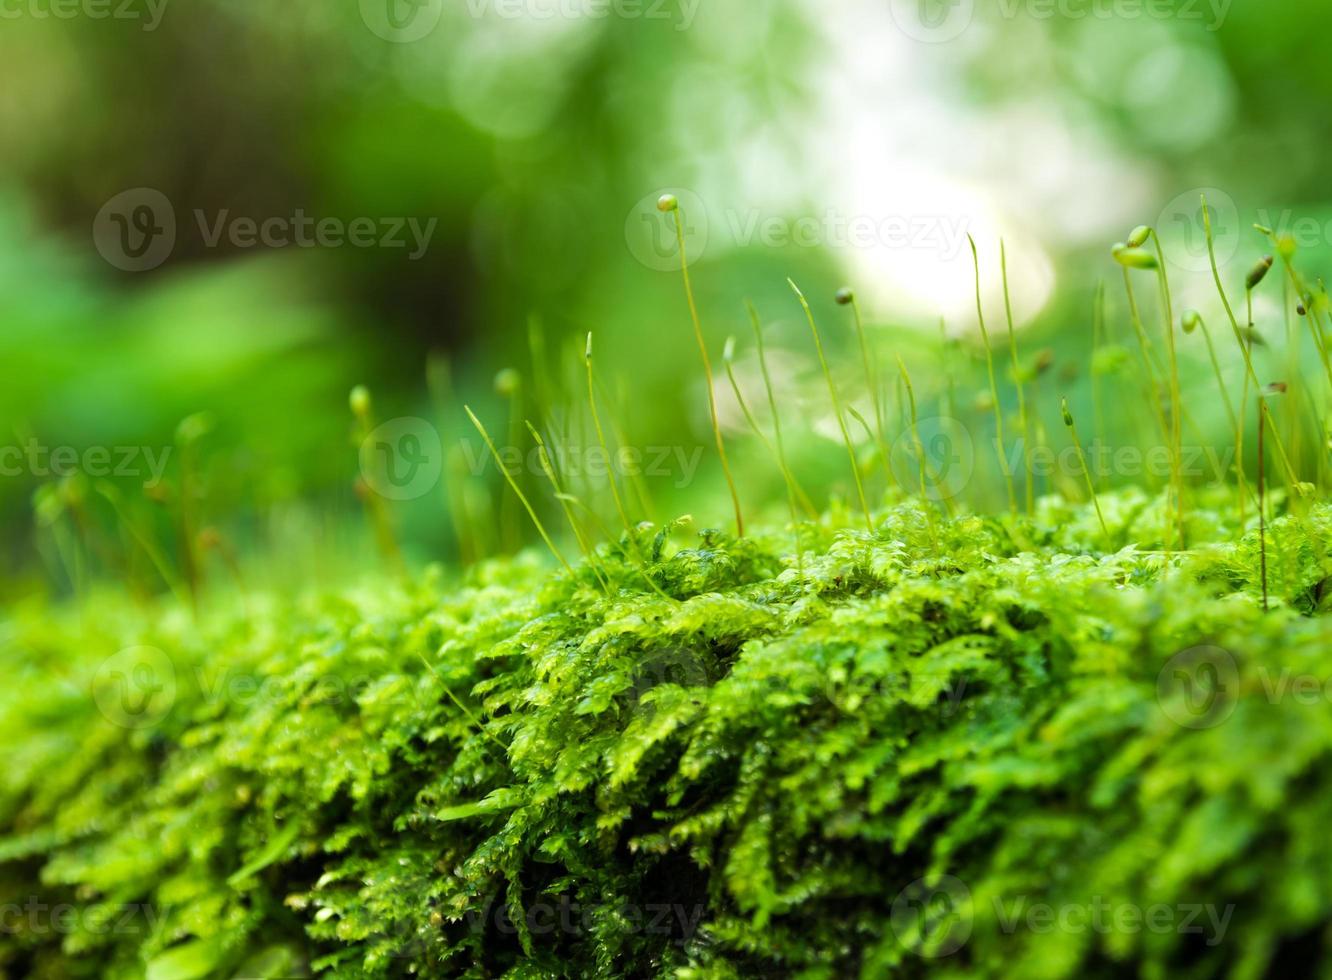 Sporophyt aus frischem grünem Moos mit Wassertropfen, die im Regenwald wachsen foto